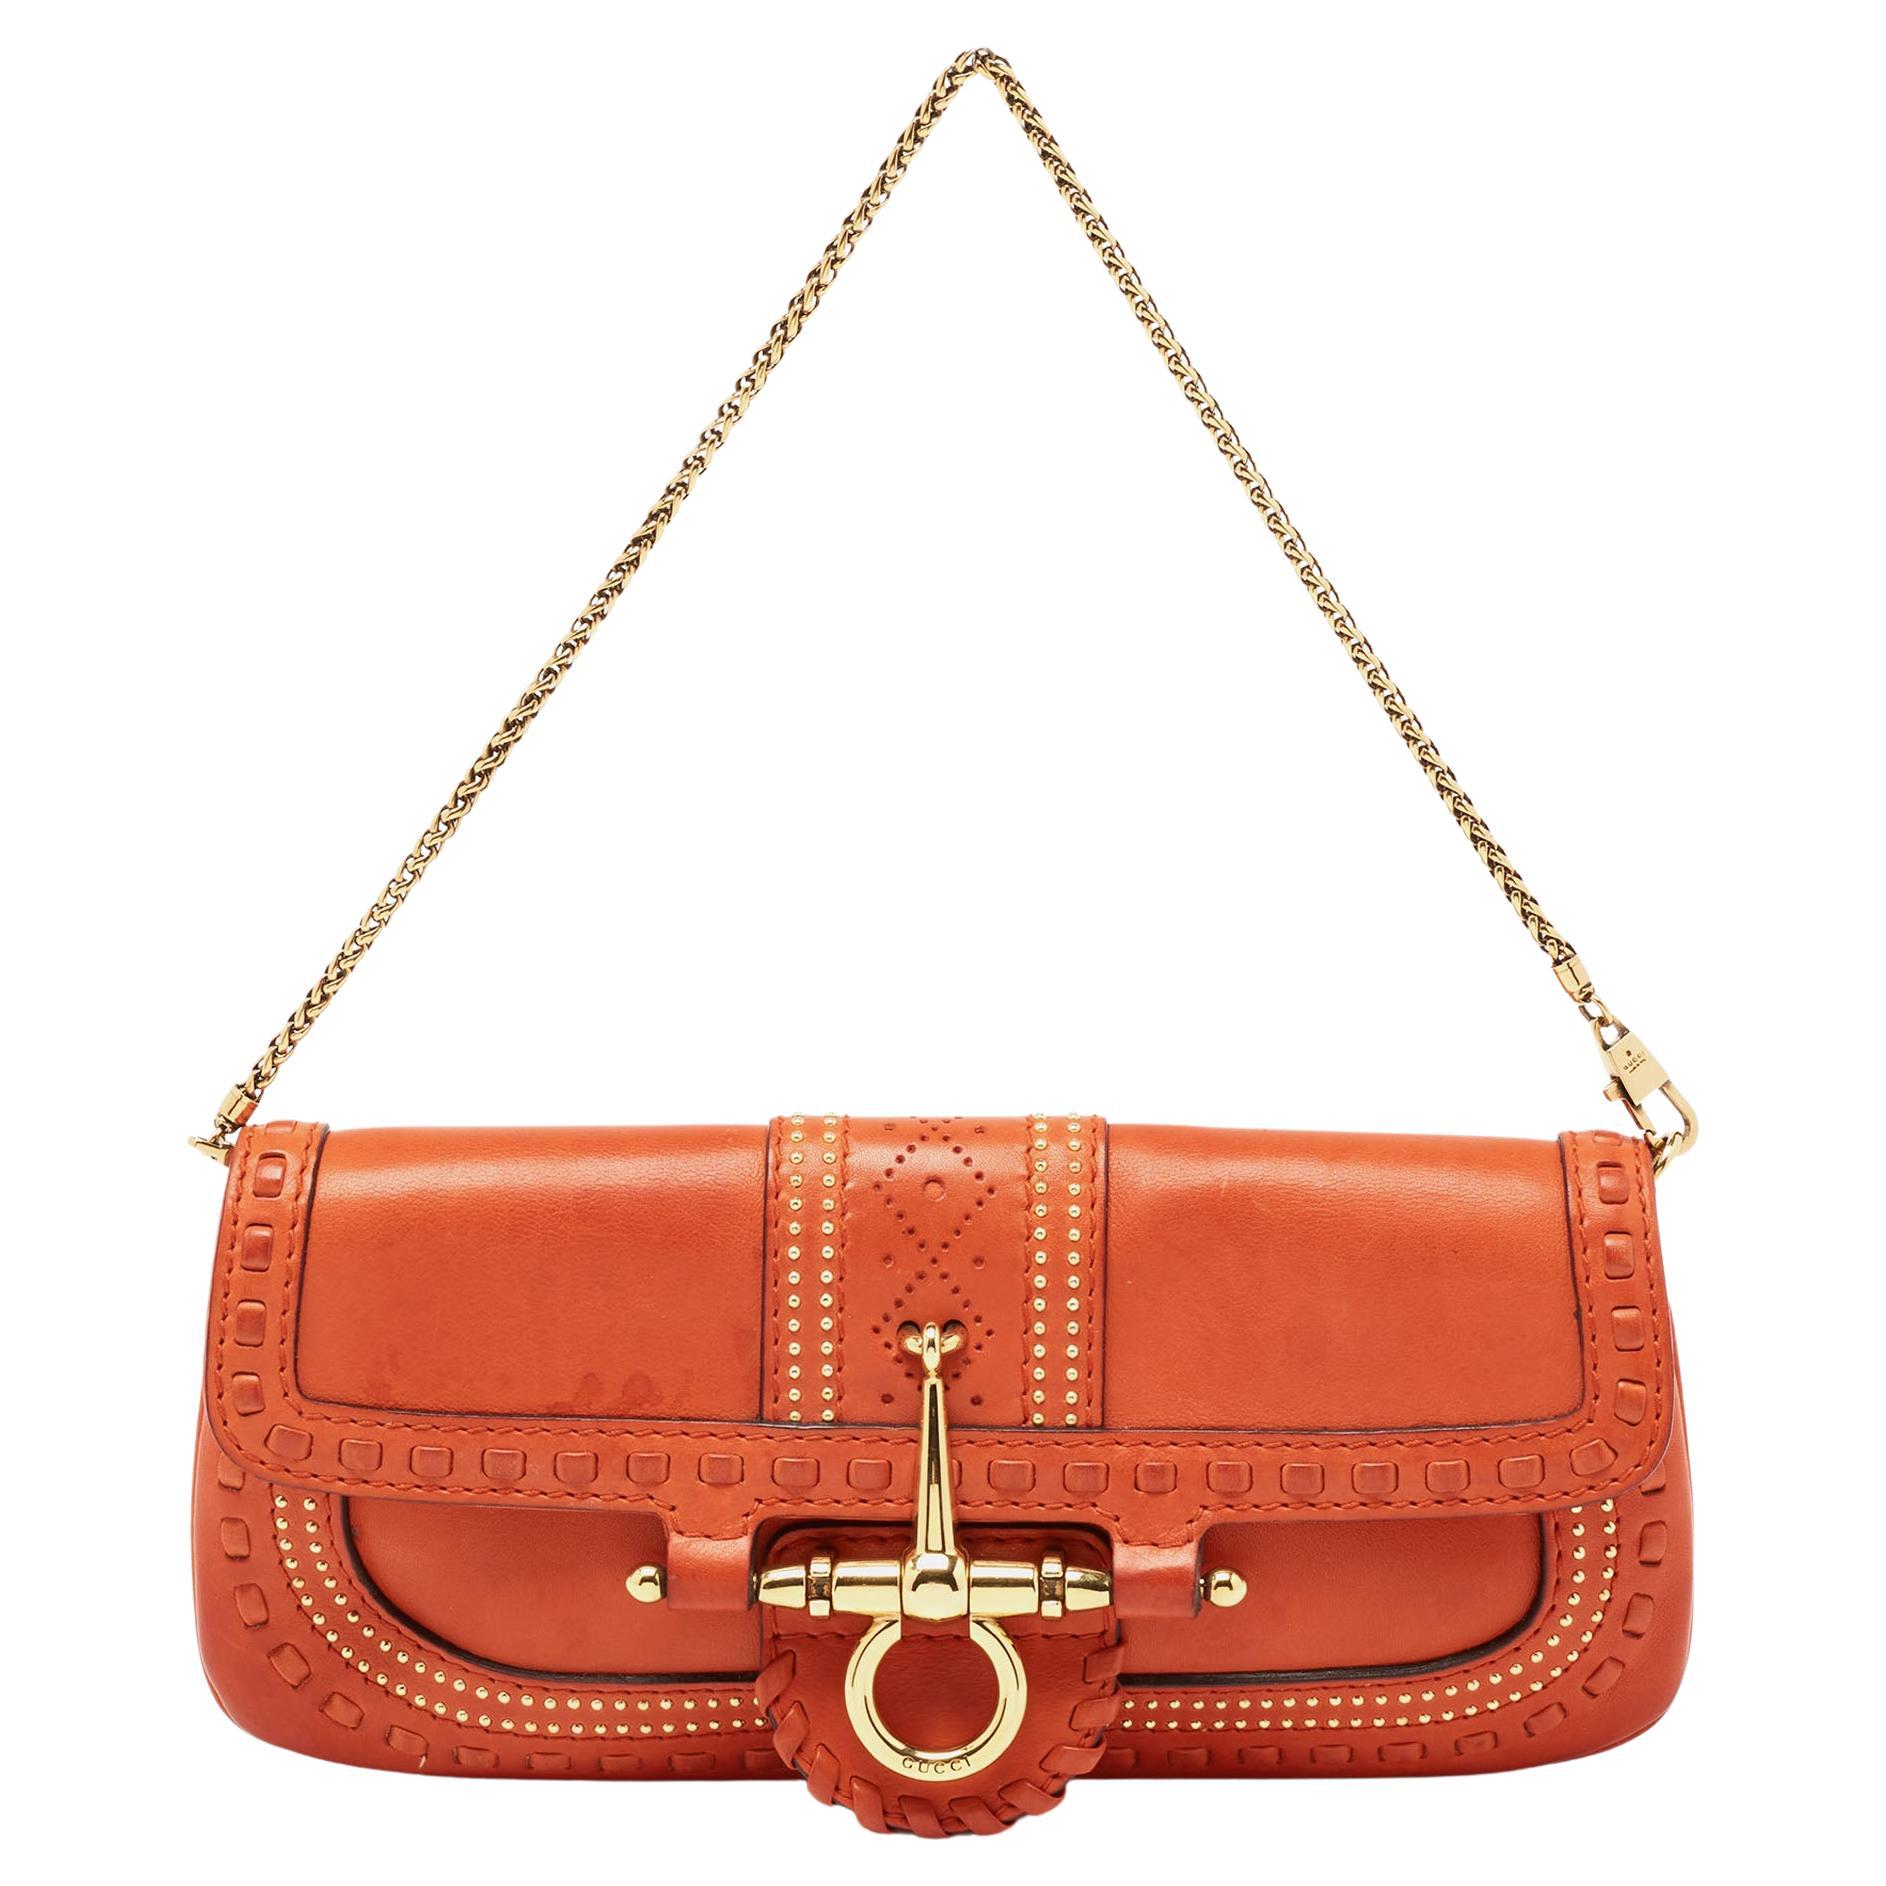 Gucci Baguette Bag - For Sale on 1stDibs | gucci baguette bag 